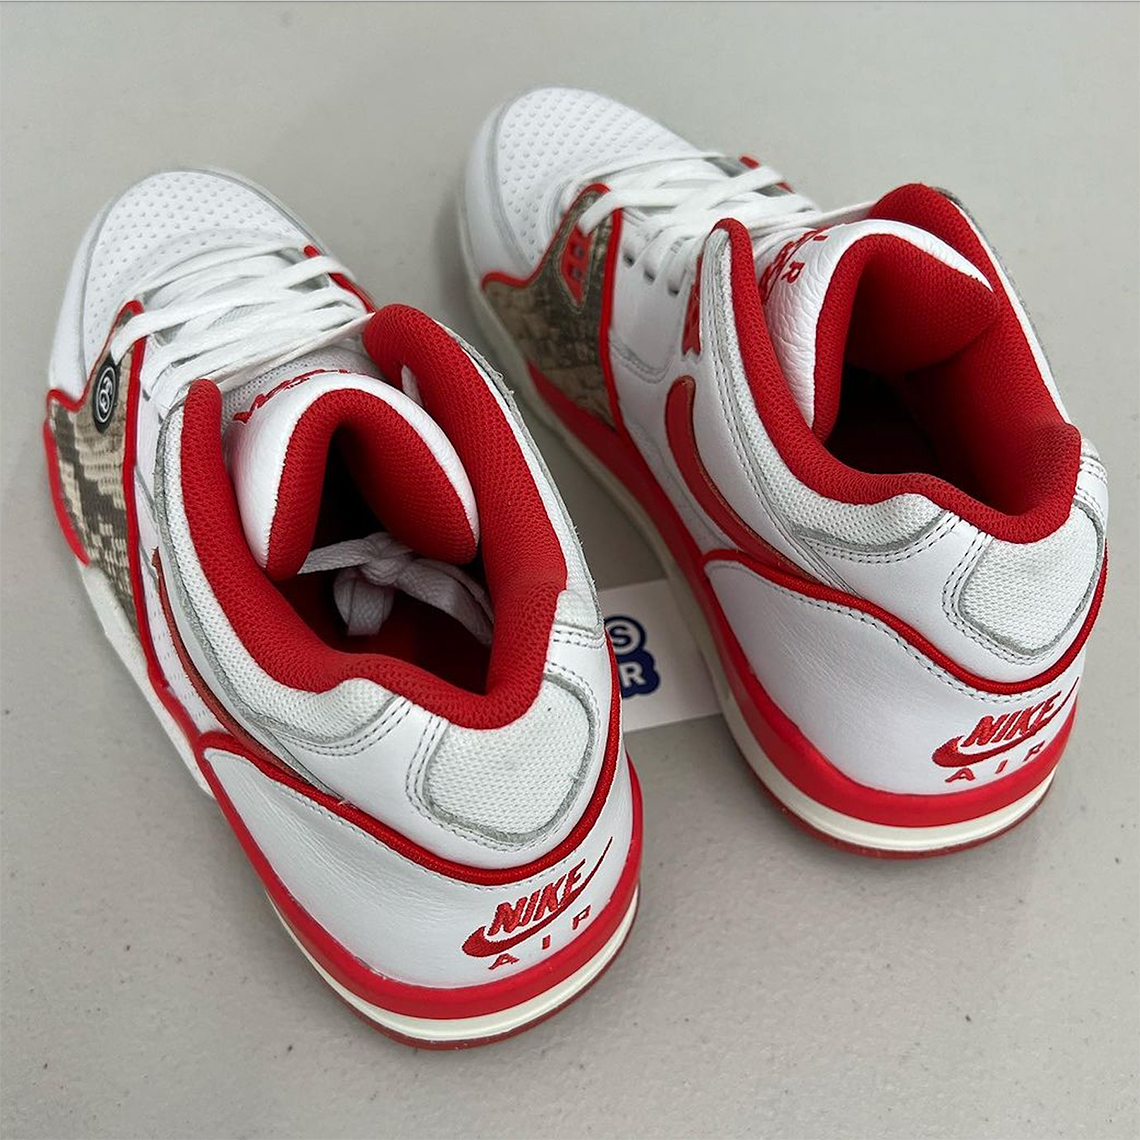 Topnotch Wears - Swipe 👉👉 Nike Air Force 1 LV 08 Sneakers